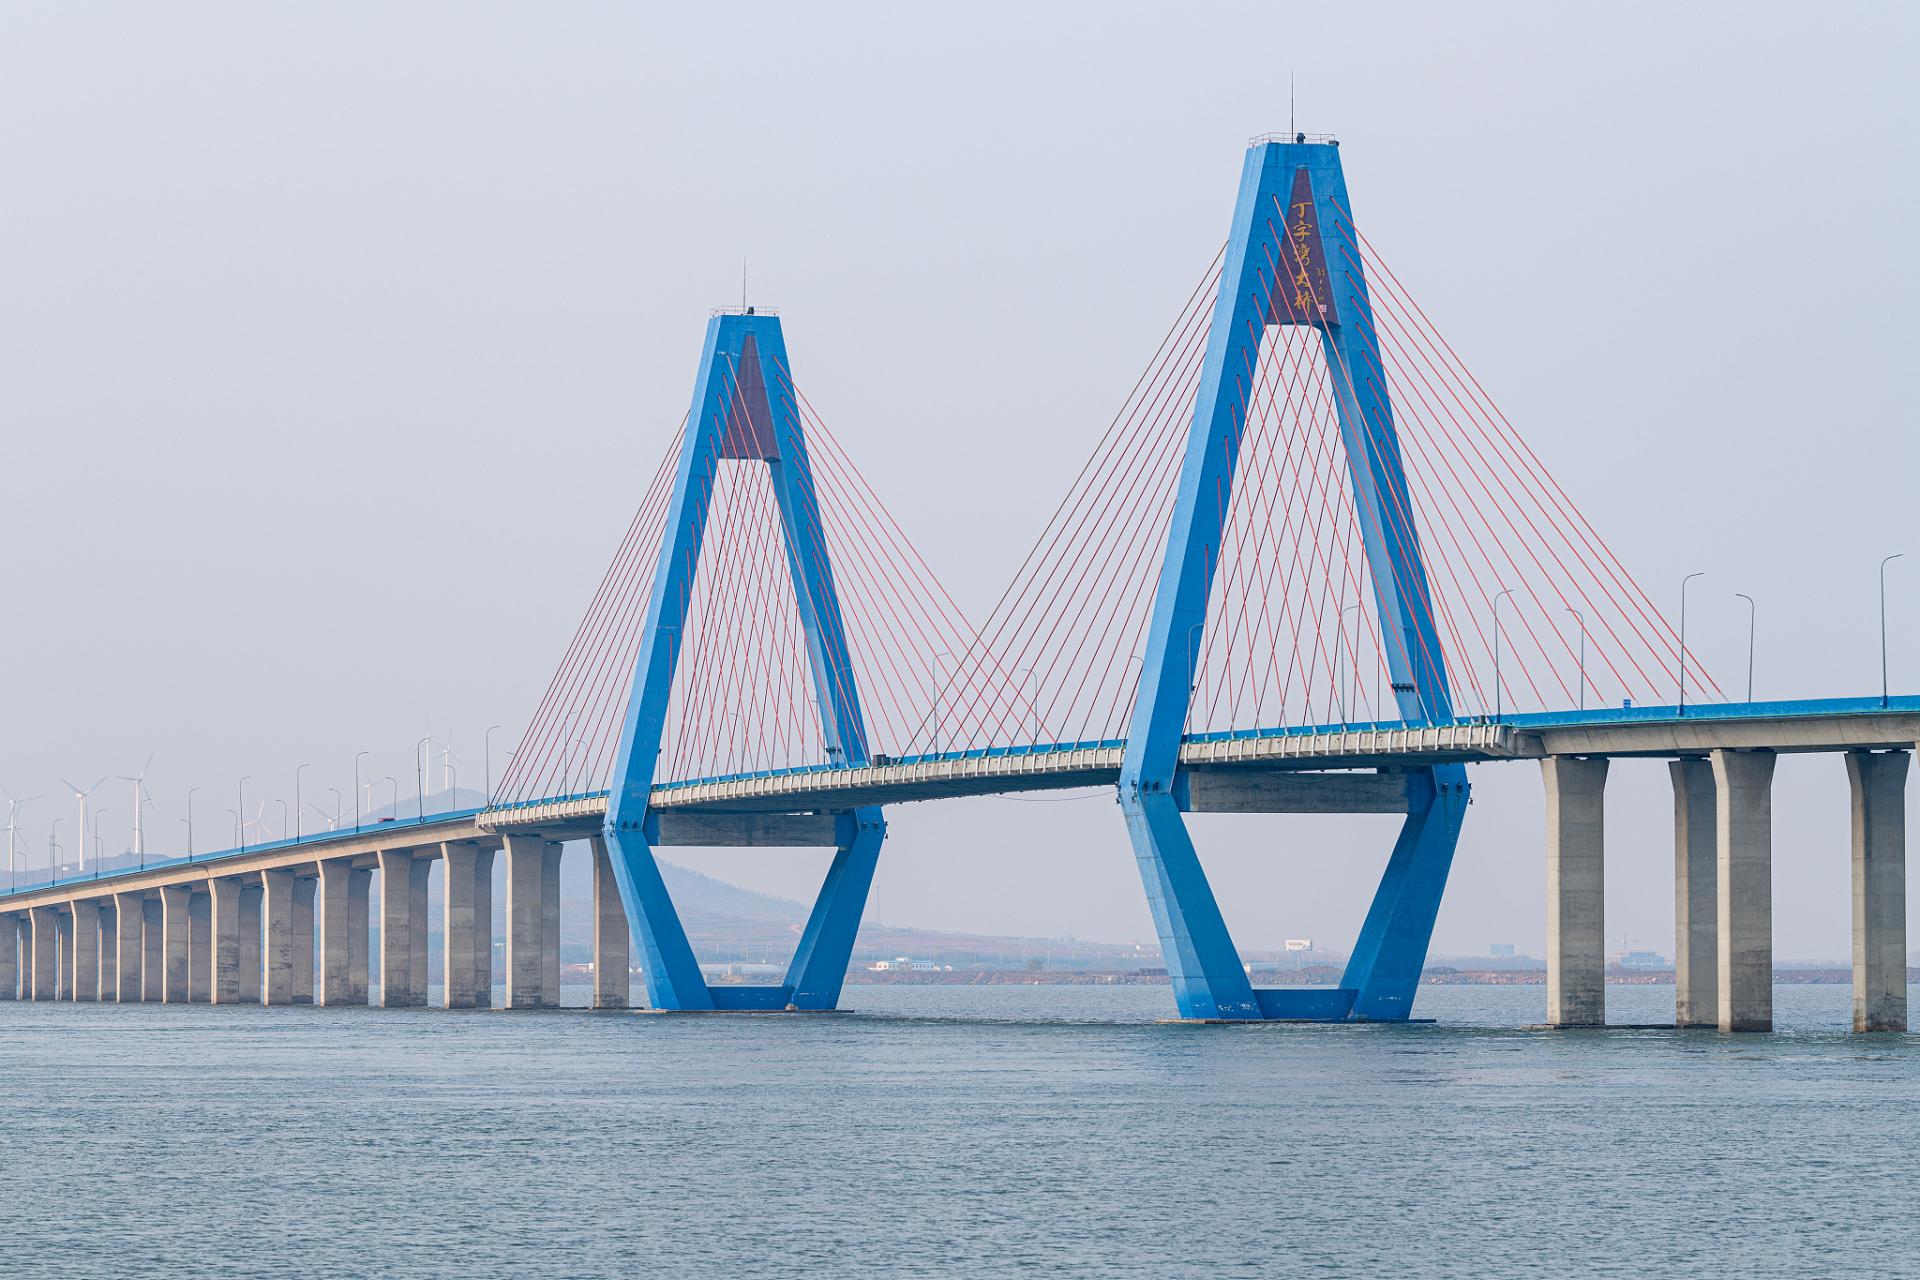 据史书记载,这座桥横跨在北海之上,连接着陆地与海洋,成为连接沿海